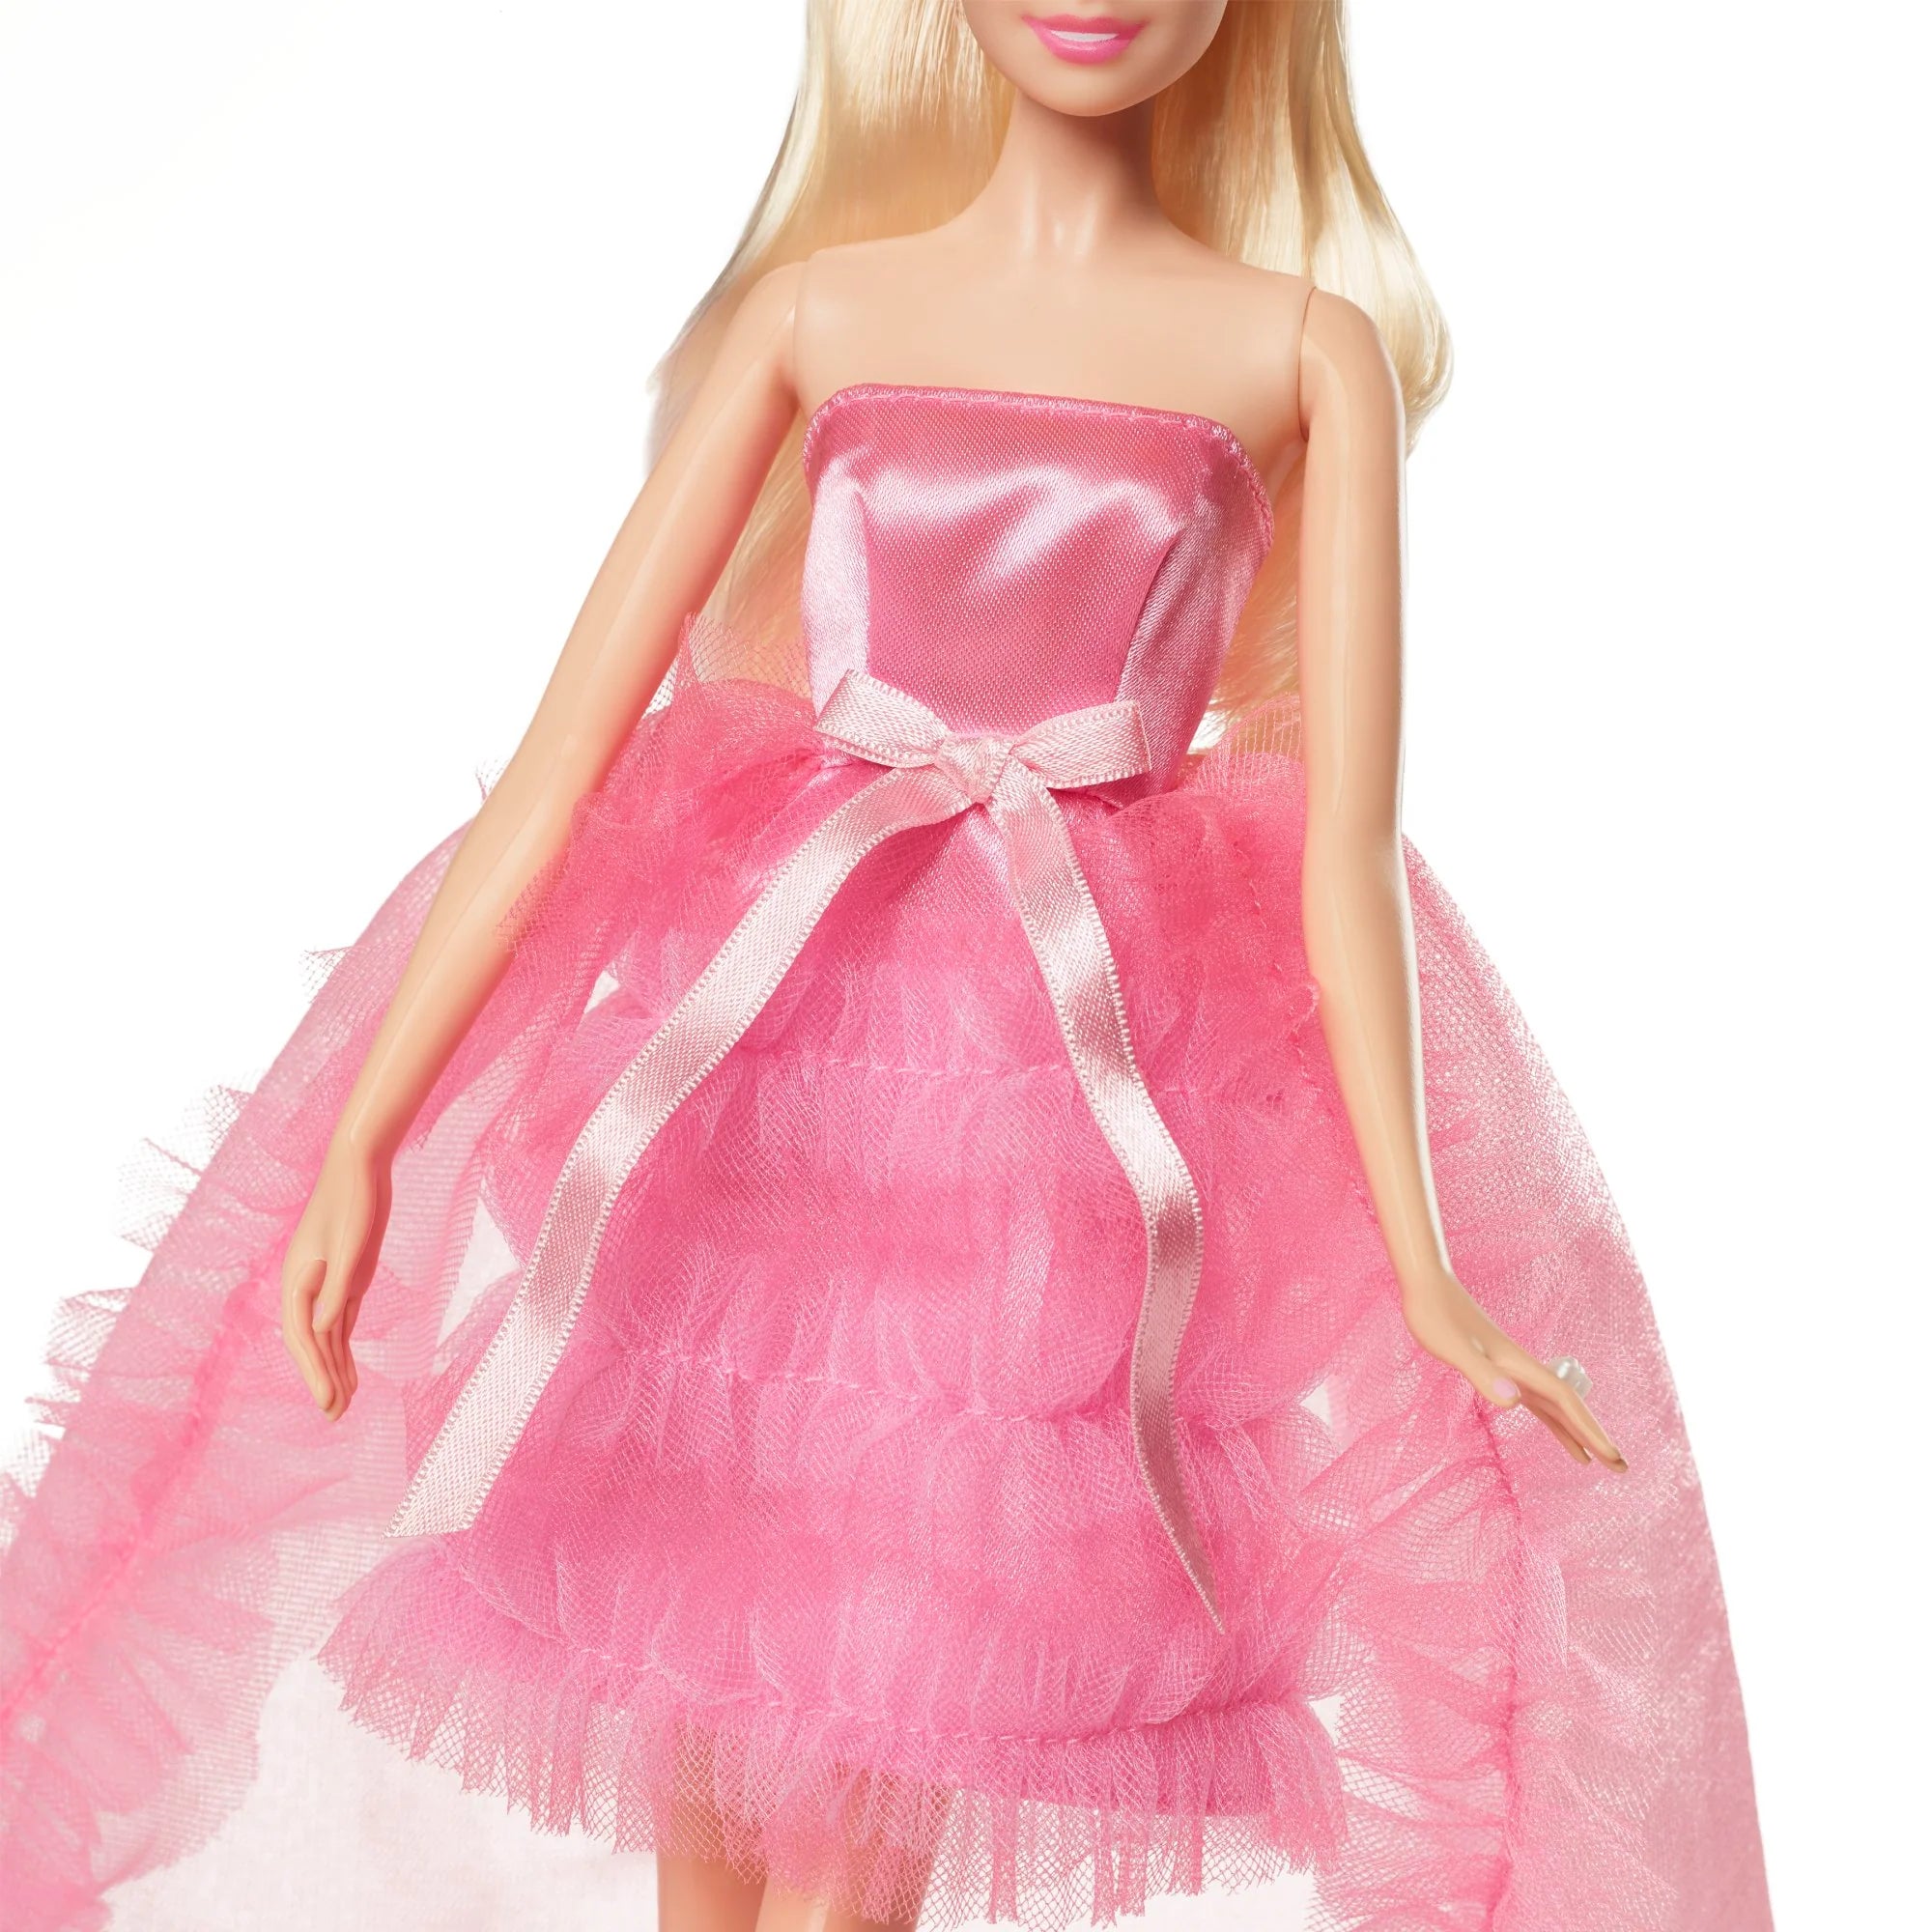 Barbie Signature Series Birthday Wishes